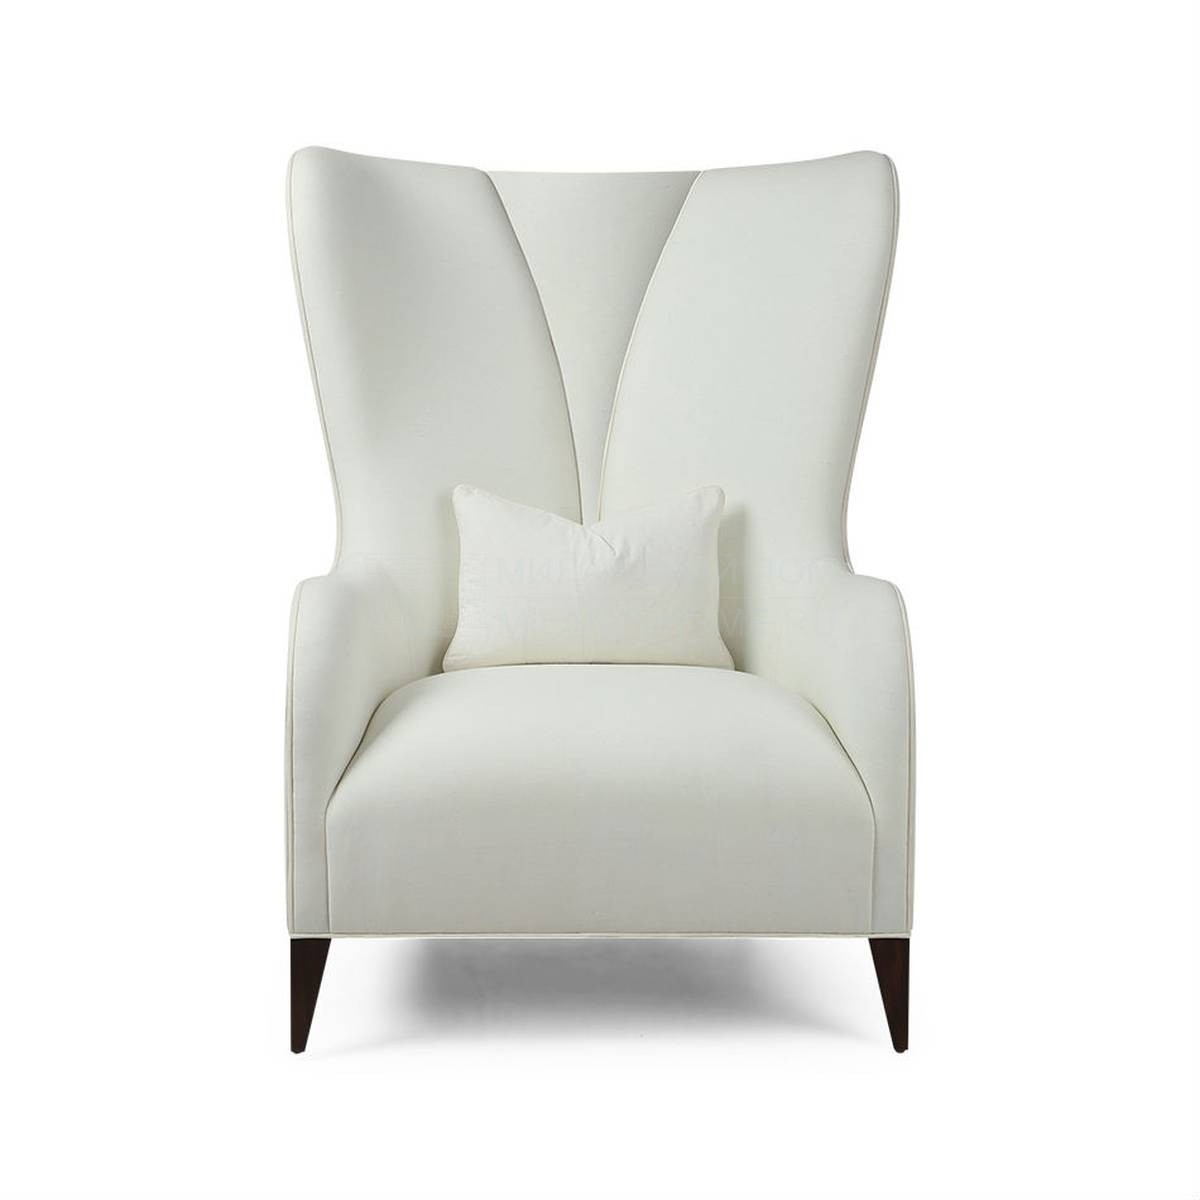 Кожаное кресло Victoire armchair из США фабрики CHRISTOPHER GUY